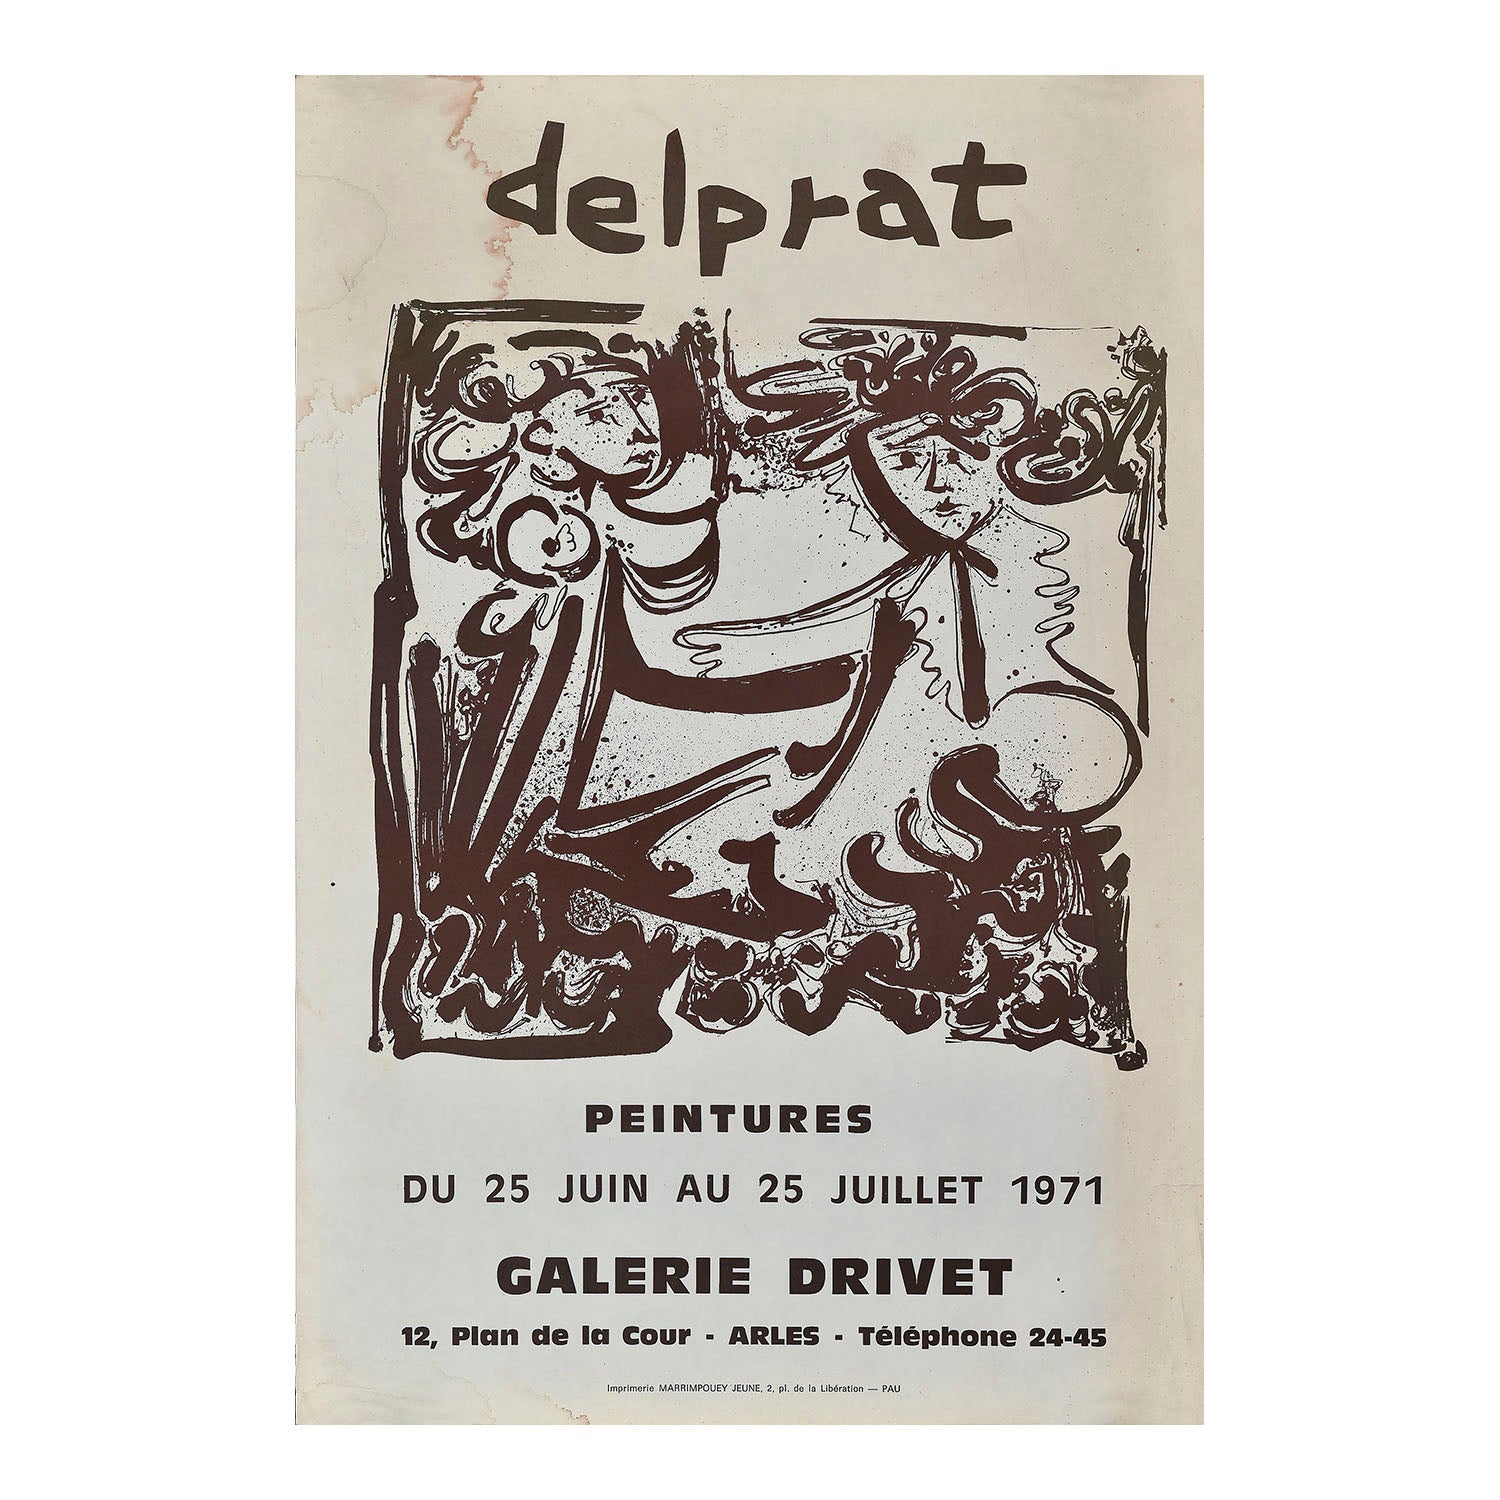 Original art exhibition poster, Delprat. Peintures, Galerie Drivet, France 1971